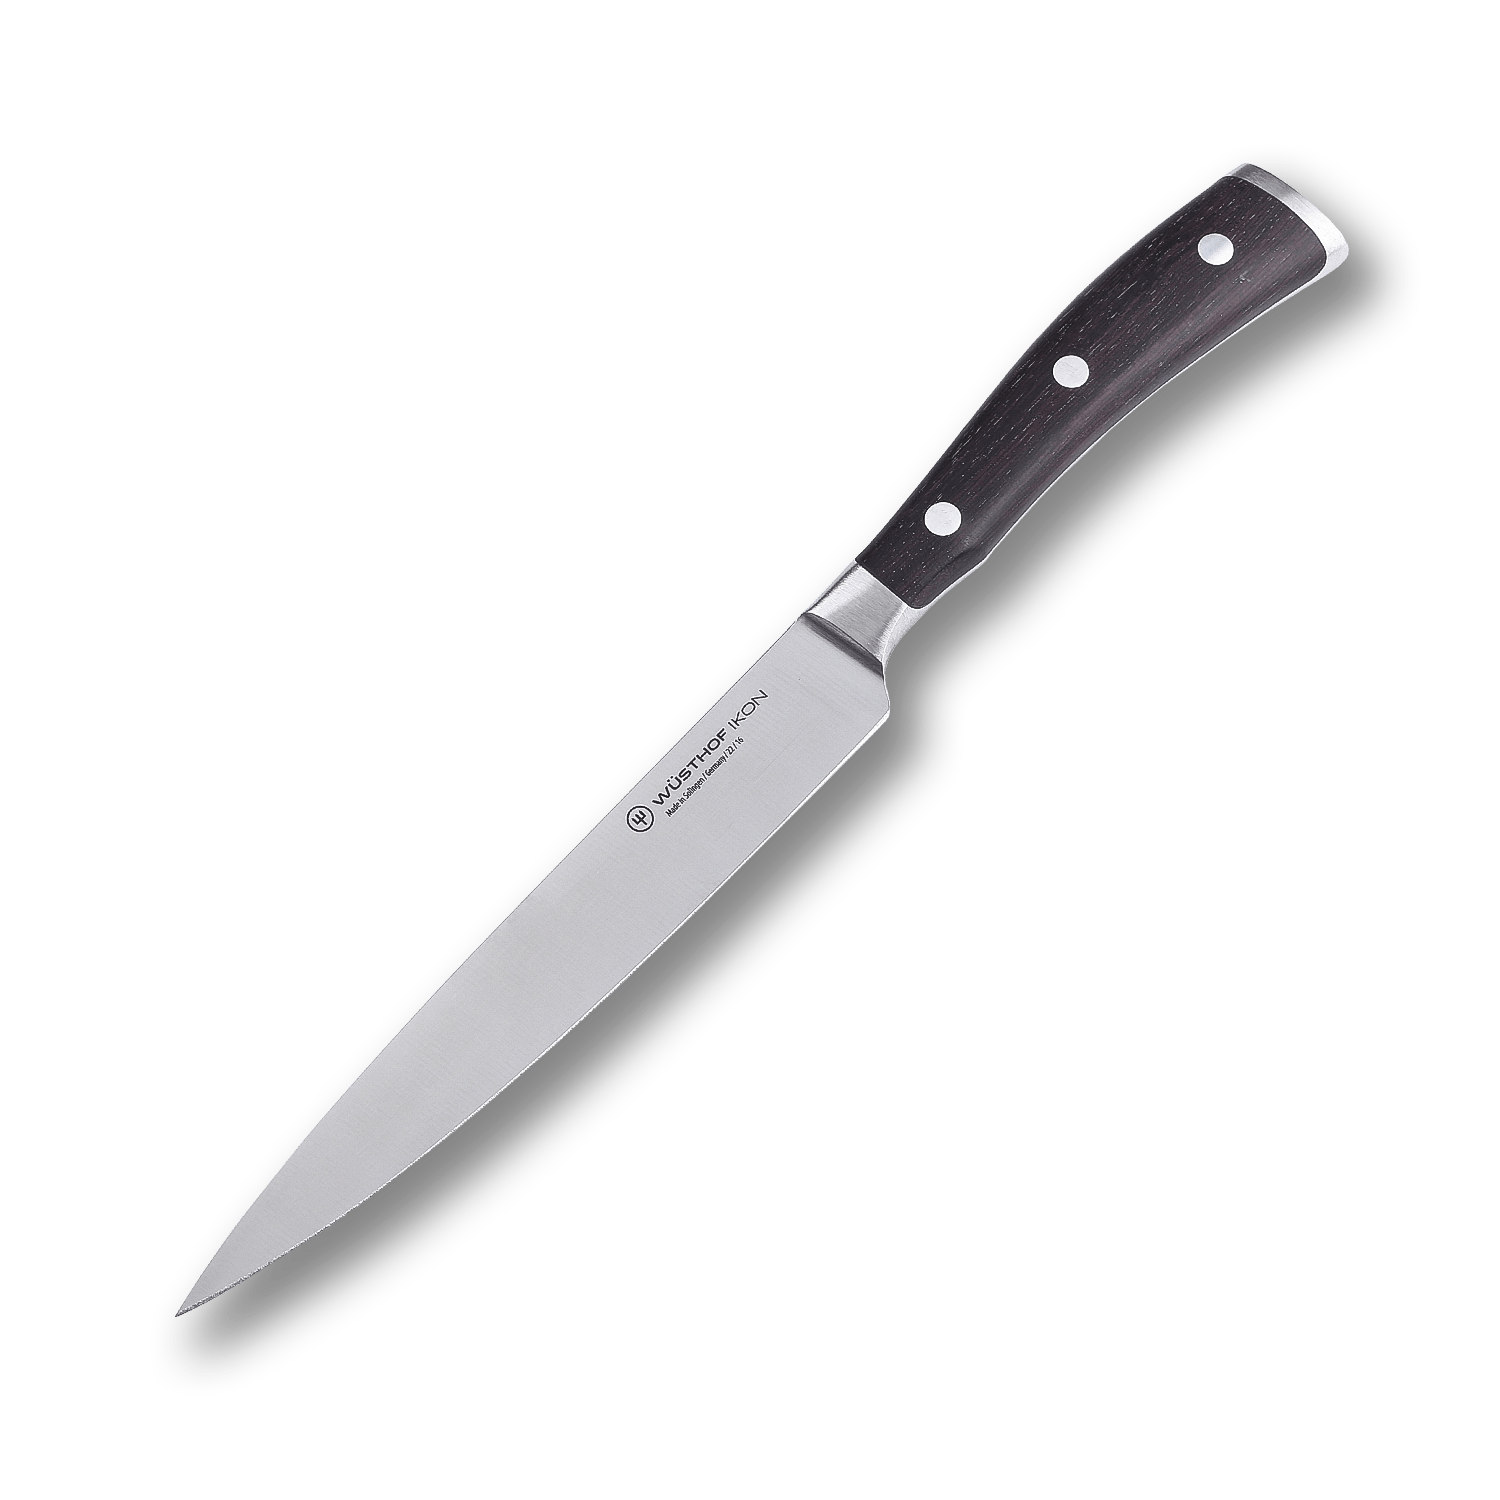 Универсальный кухонный нож Wuesthof 16 см, кованая молибден-ванадиевая нержавеющая сталь X50CrMoV15, 1010530716